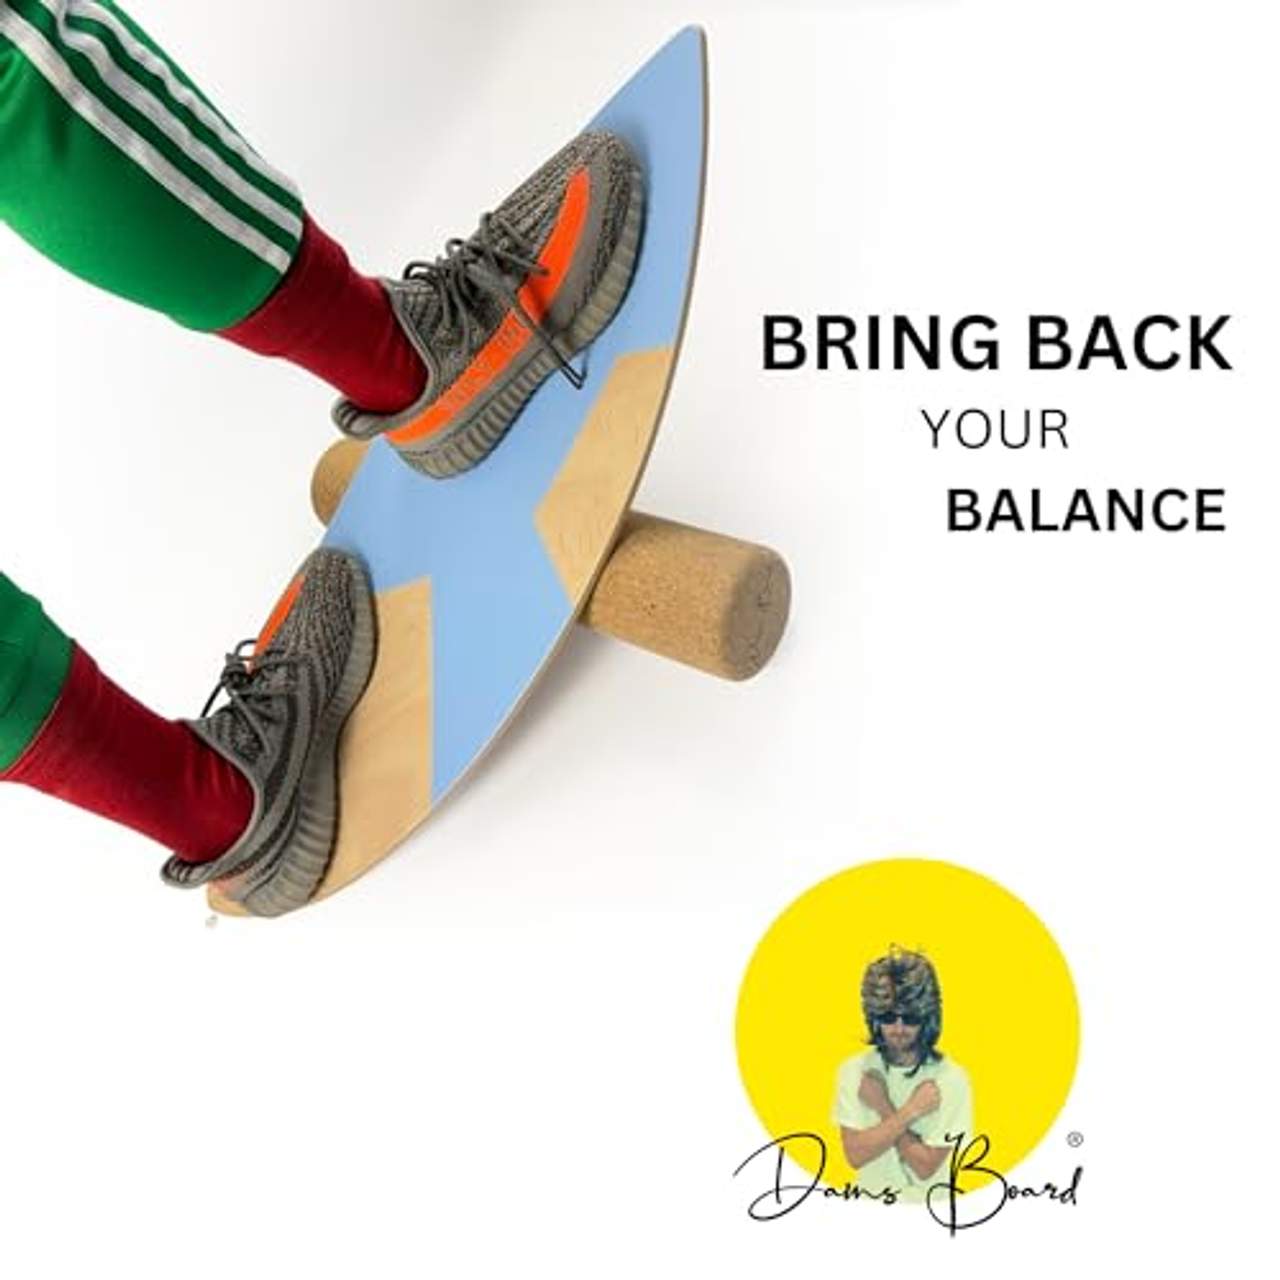 DANS BOARD Balance Board mit beispielloser Kombination aus Rocker-Profil und Gun-Shape für unbegrenzte